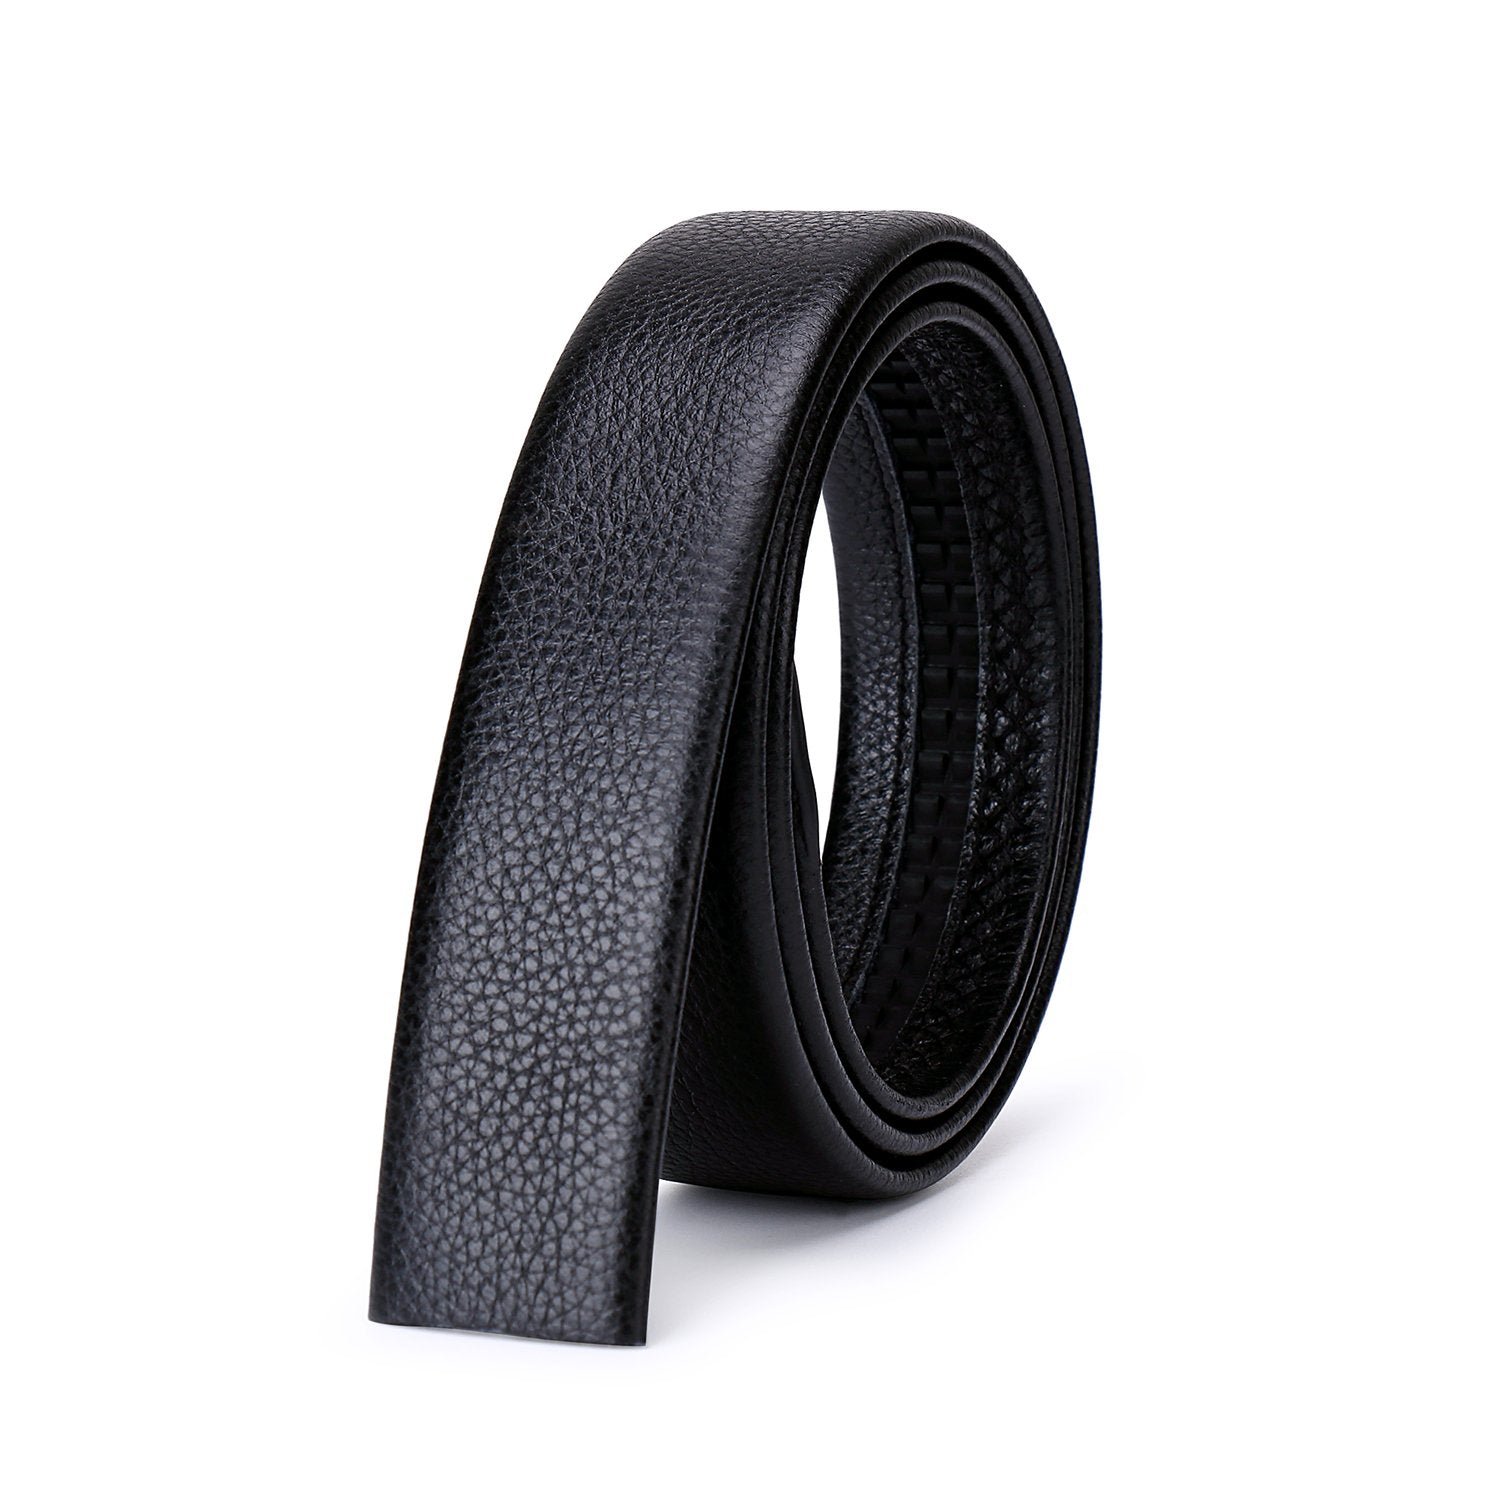 Slide Belt For Men Jeans - Beltbuy Store-men belts leather